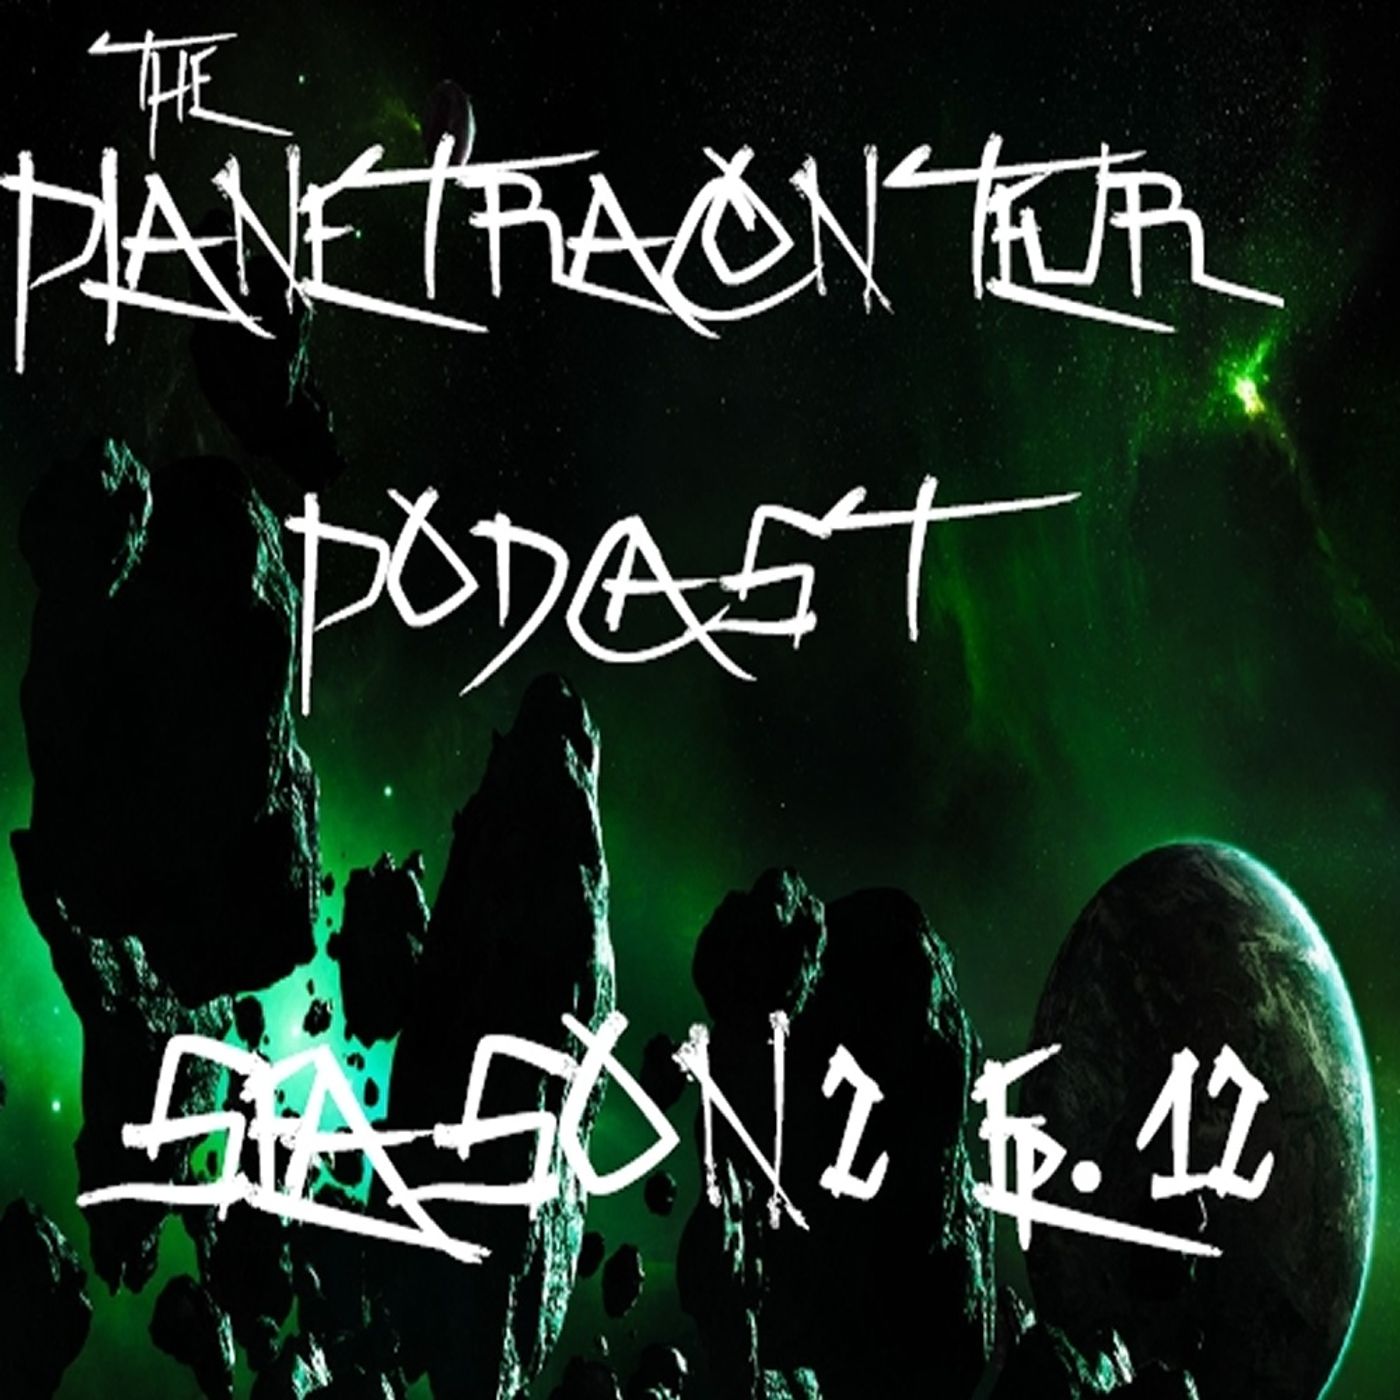 Planet Raconteur Season 2 Episode 12